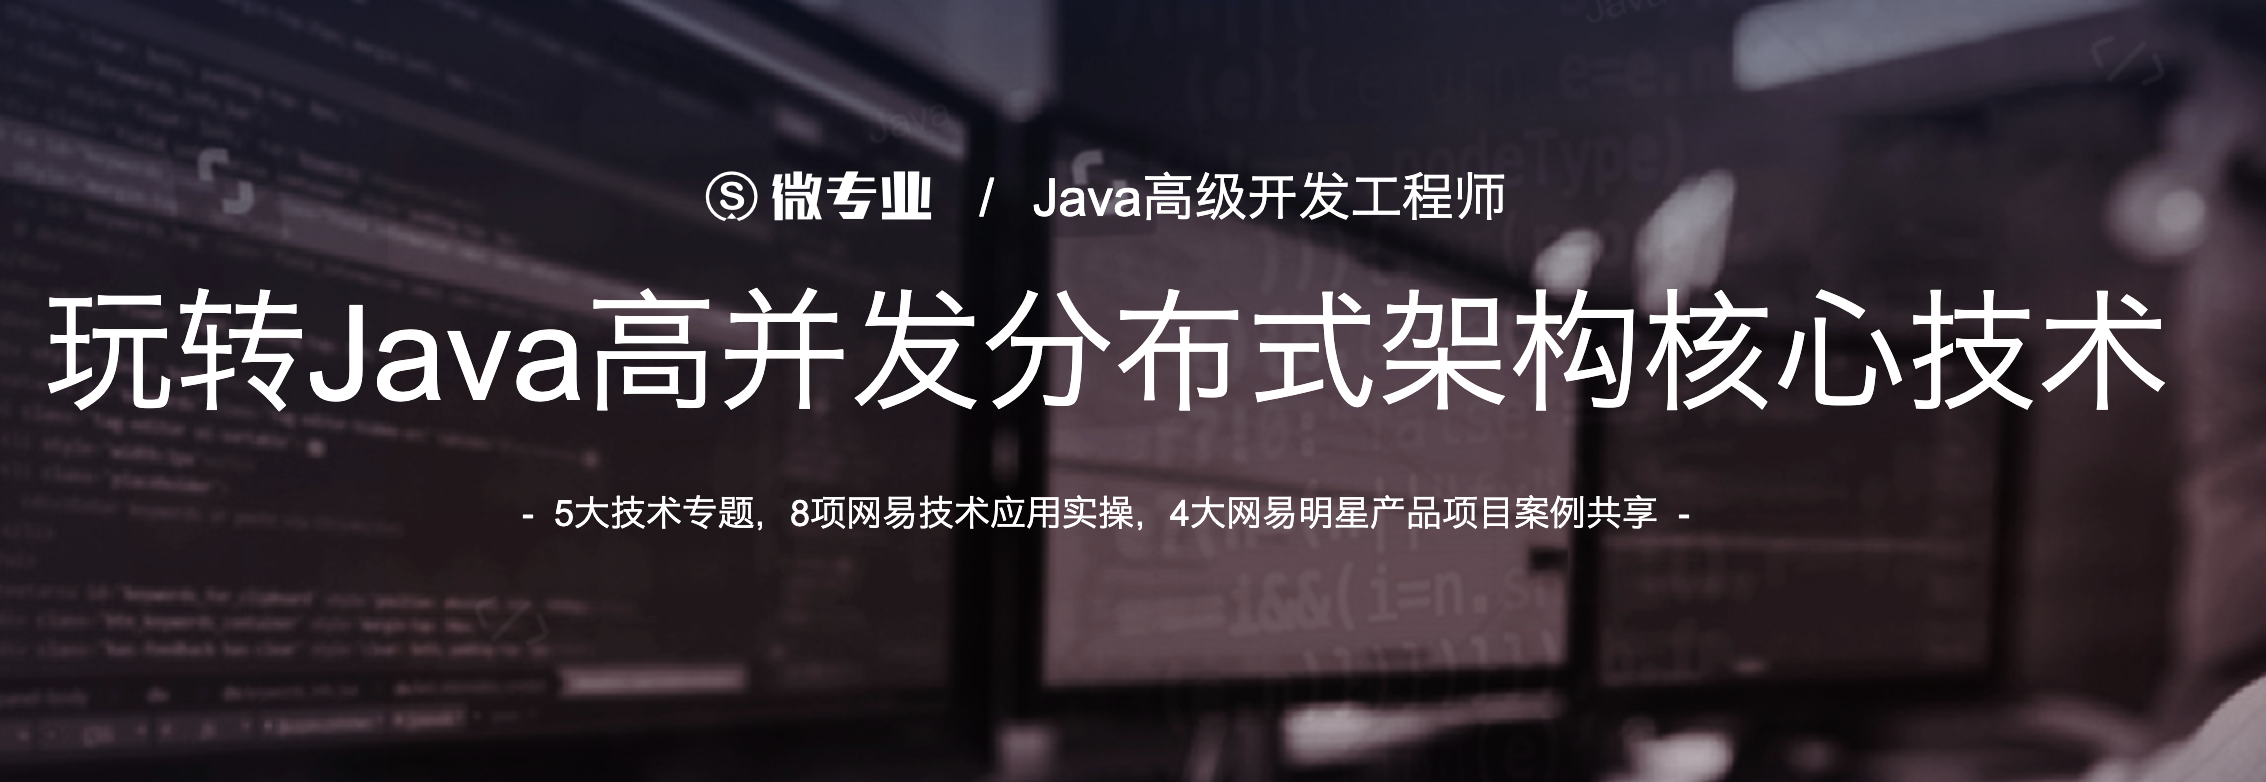 价值13680- Java高级开发工程师 -微专业